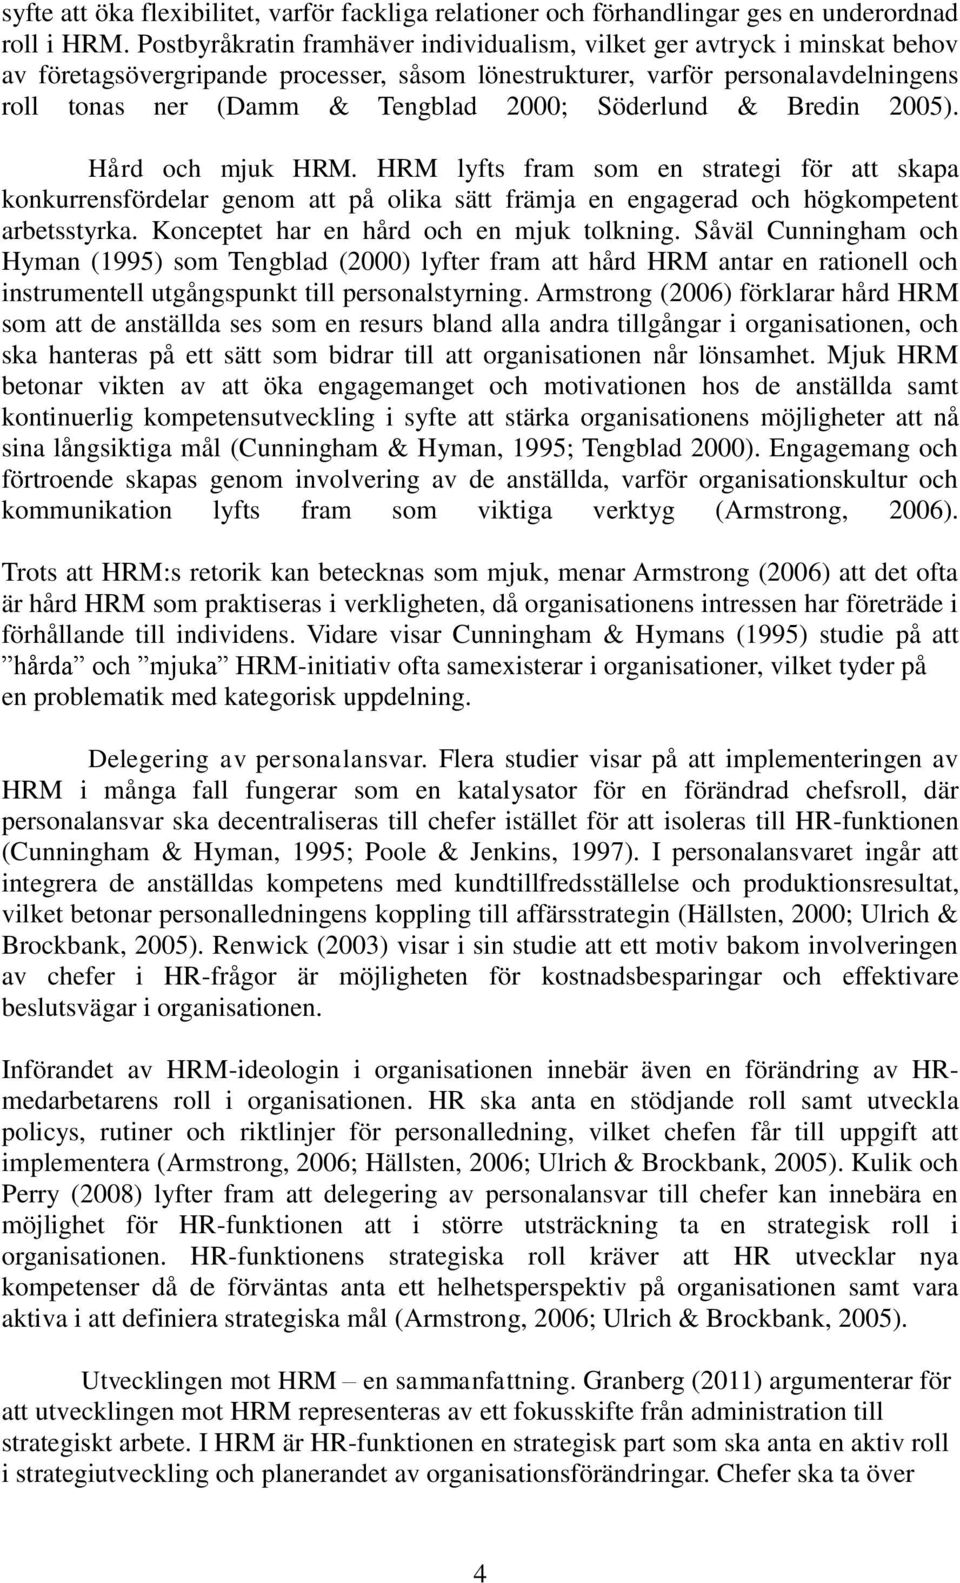 Söderlund & Bredin 2005). Hård och mjuk HRM. HRM lyfts fram som en strategi för att skapa konkurrensfördelar genom att på olika sätt främja en engagerad och högkompetent arbetsstyrka.